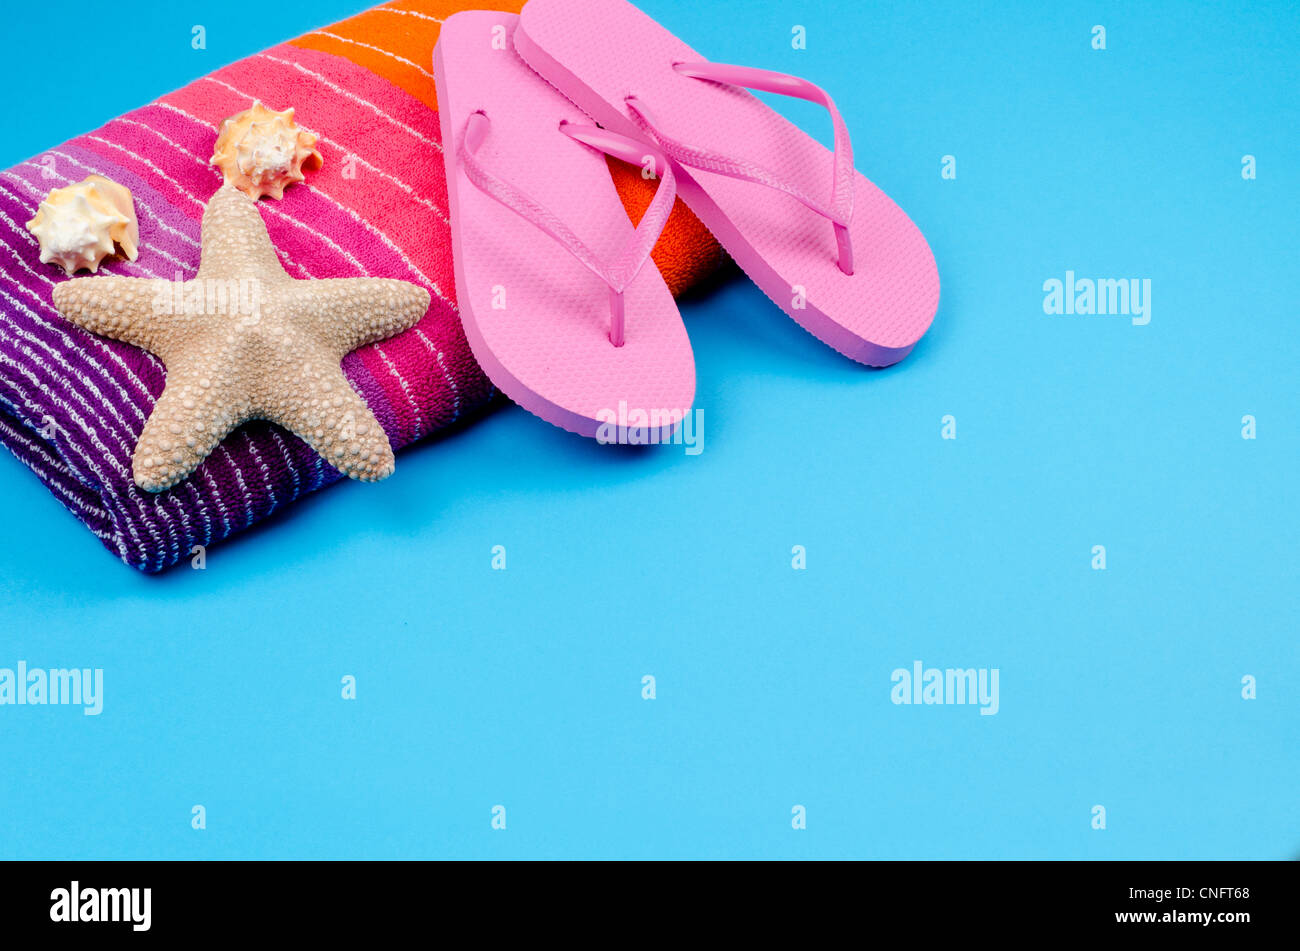 Rosa flipflops collocato su un cotone morbido telo da spiaggia con una stella di mare e conchiglie - fondo azzurro con spazio di copia Foto Stock